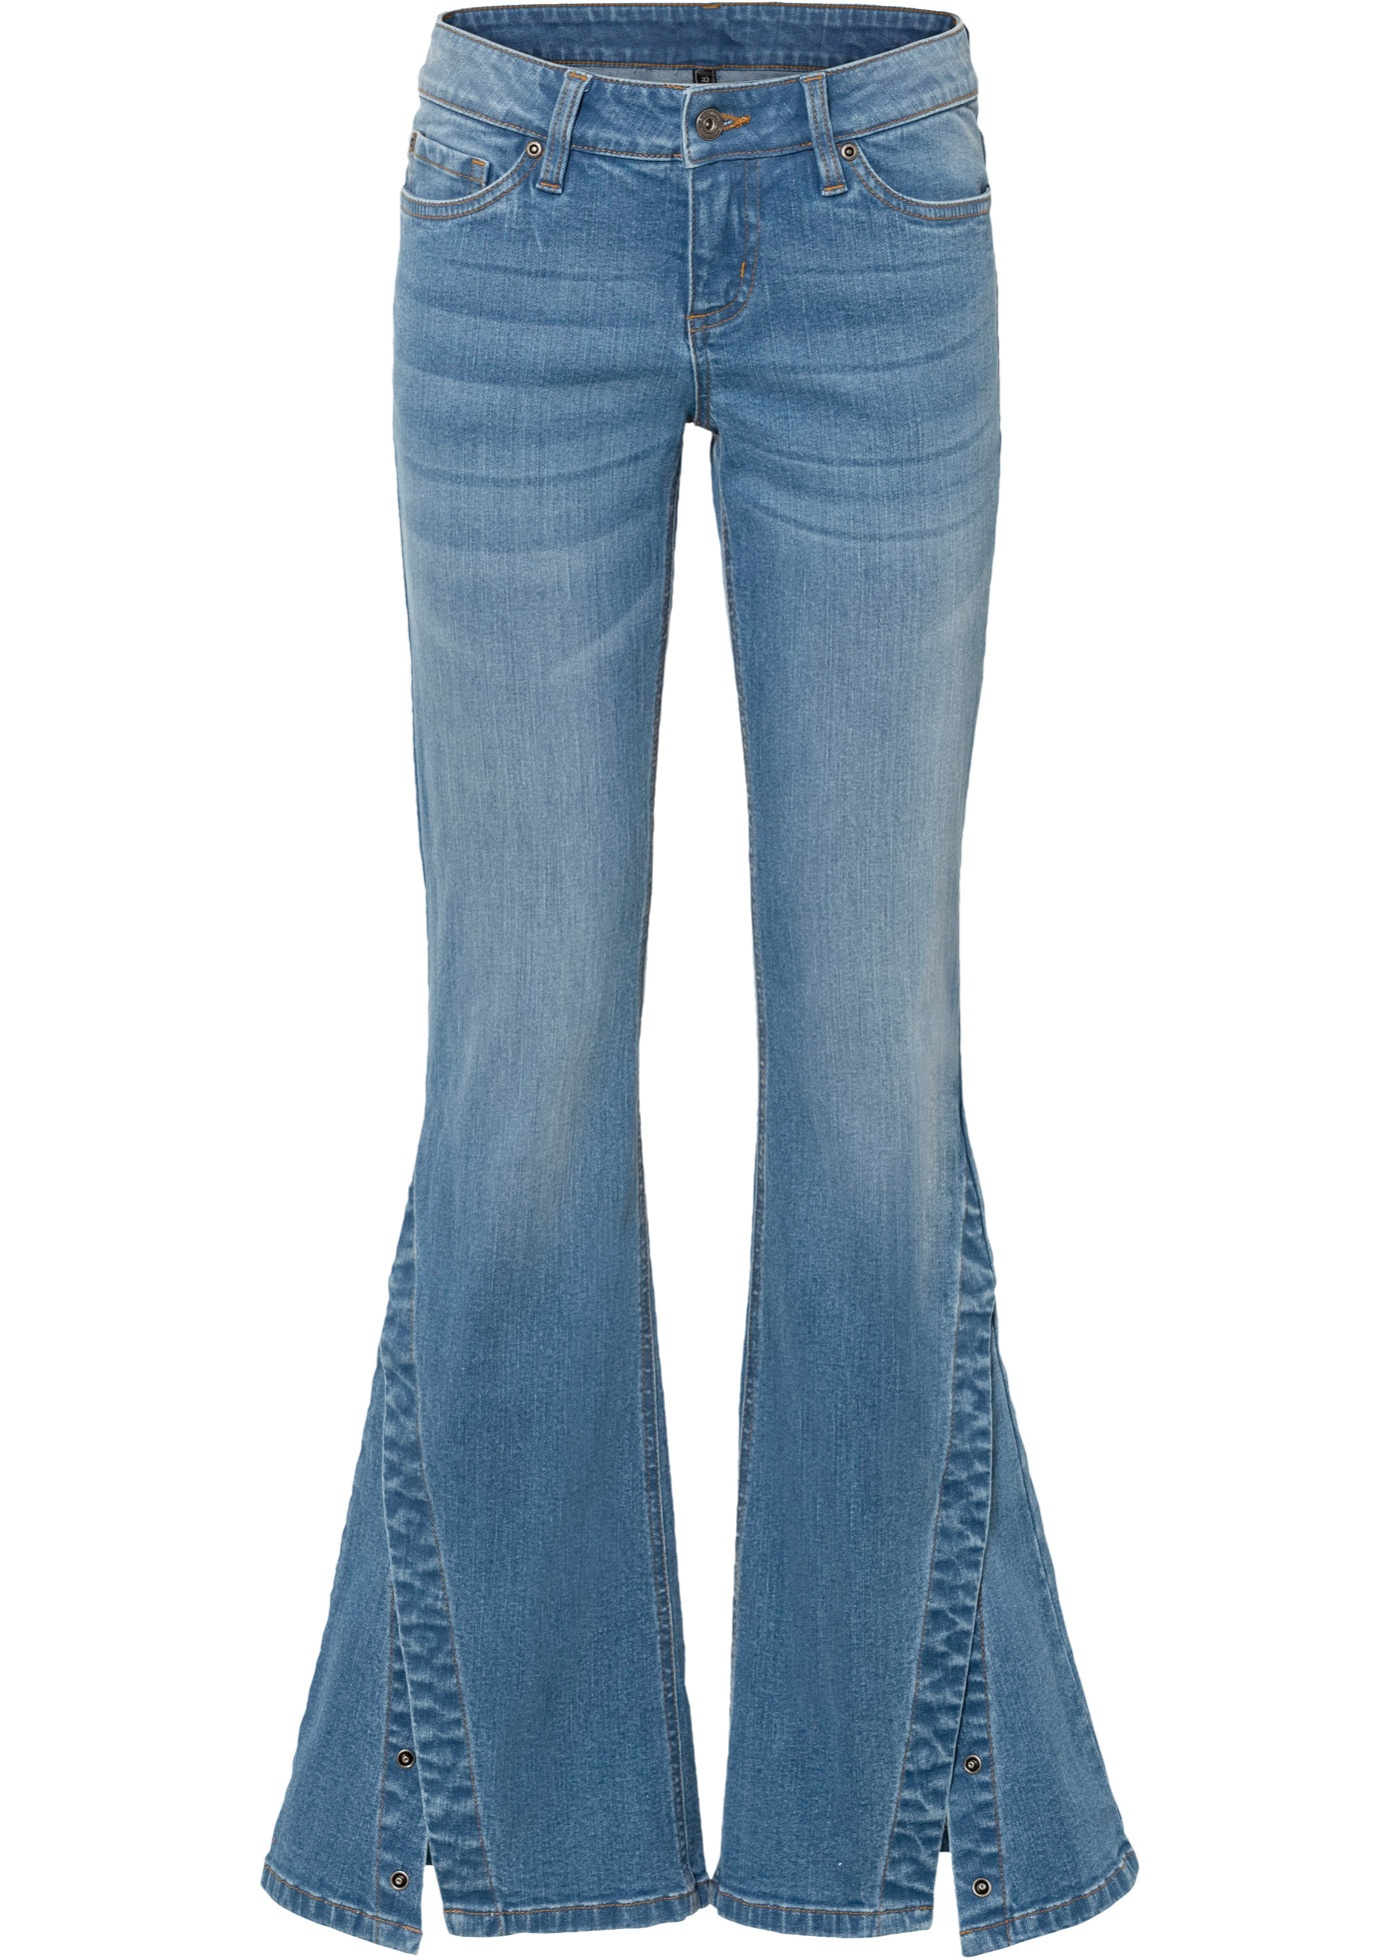 Trendy Wide Leg Jeans mit Schlitz und Knöpfen (91851995) in mittelblau denim